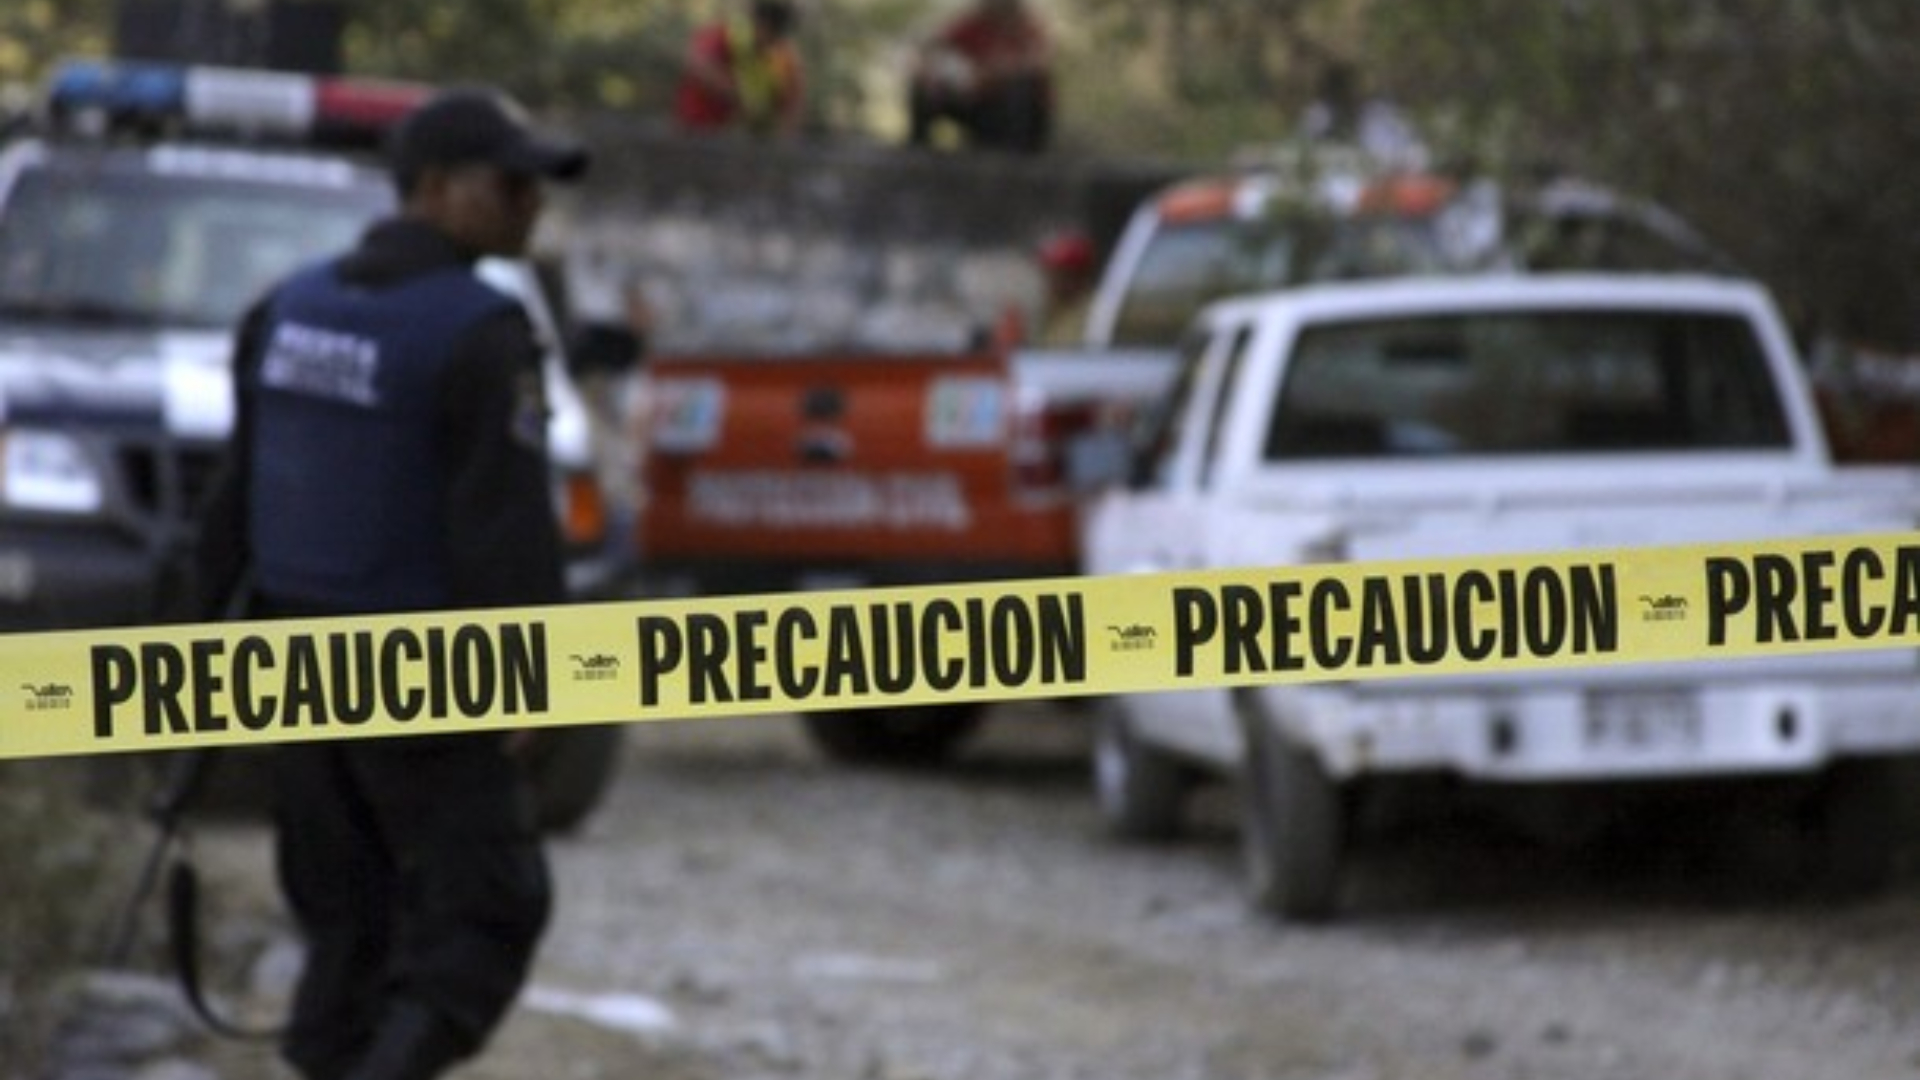 Seis personas calcinadas dentro de autos fueron localizadas en Puebla; se presume ajuste de cuentas